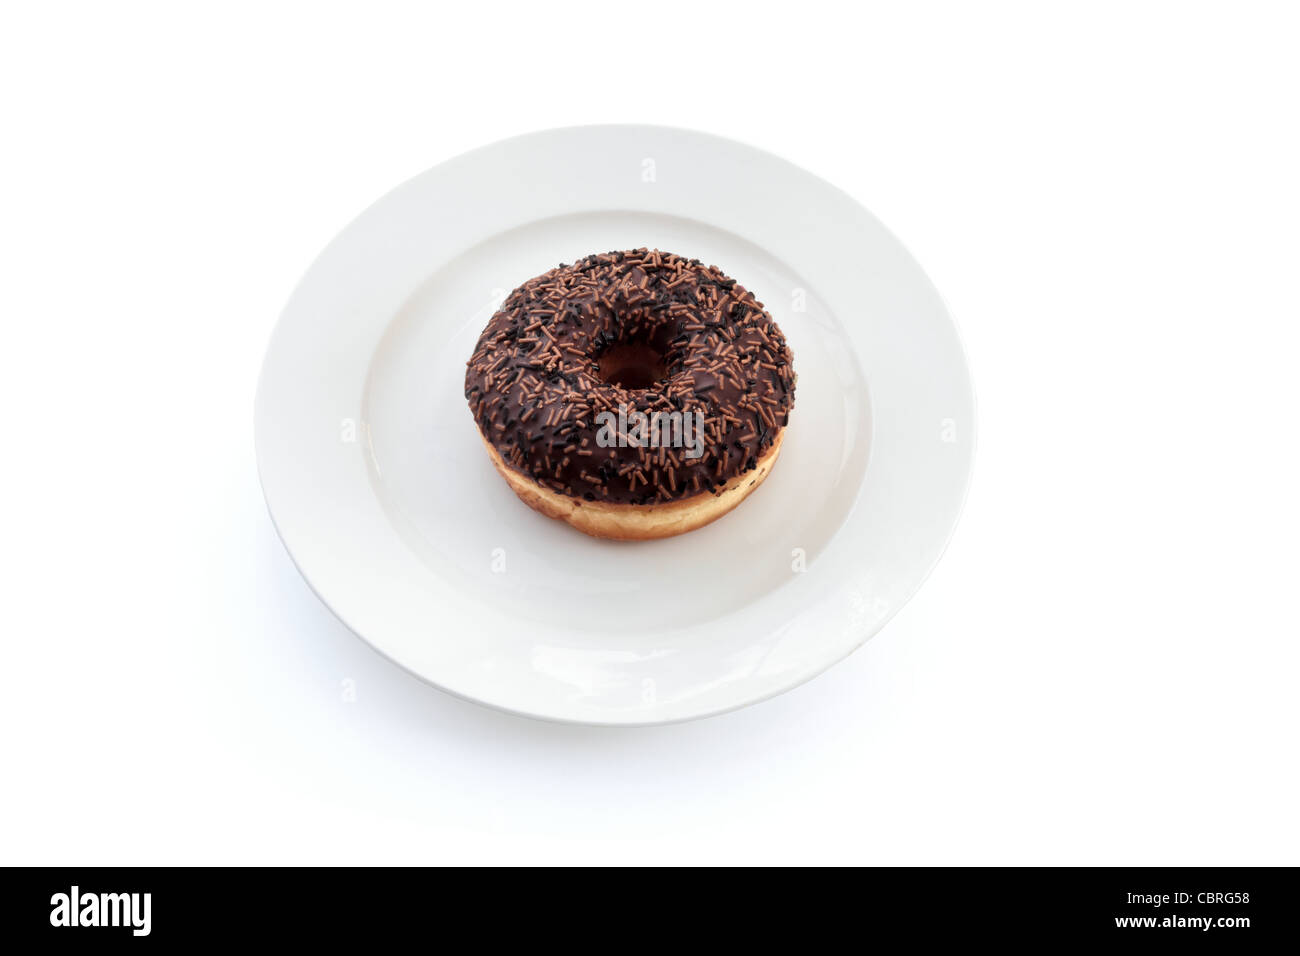 Eine einzige Eiskaffee Schoko Donut (oder Donut) auf einem weißen Teller isoliert auf einem weißen Hintergrund. Stockfoto